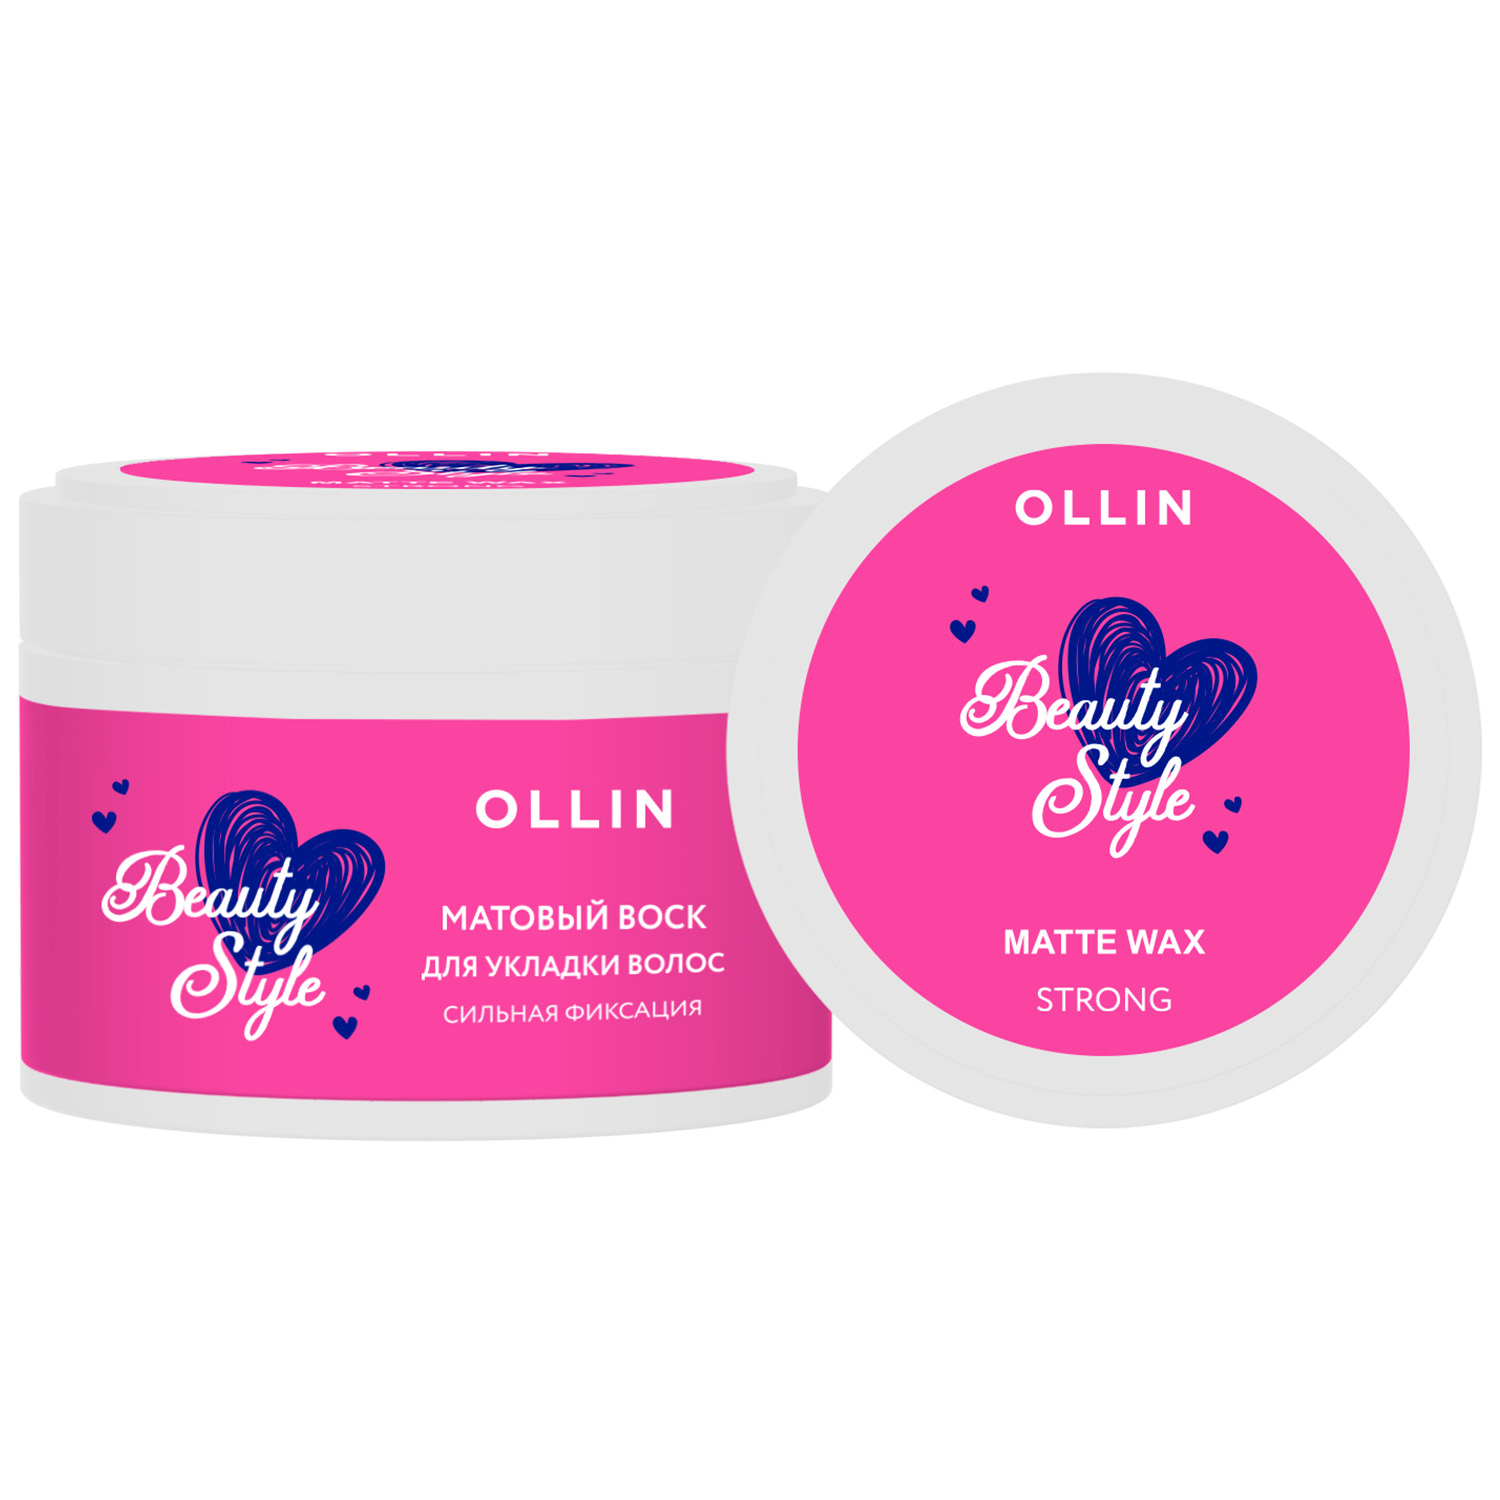 Ollin Professional Матовый воск для укладки волос сильной фиксации, 50 г (Ollin Professional, Beauty Style) фотографии